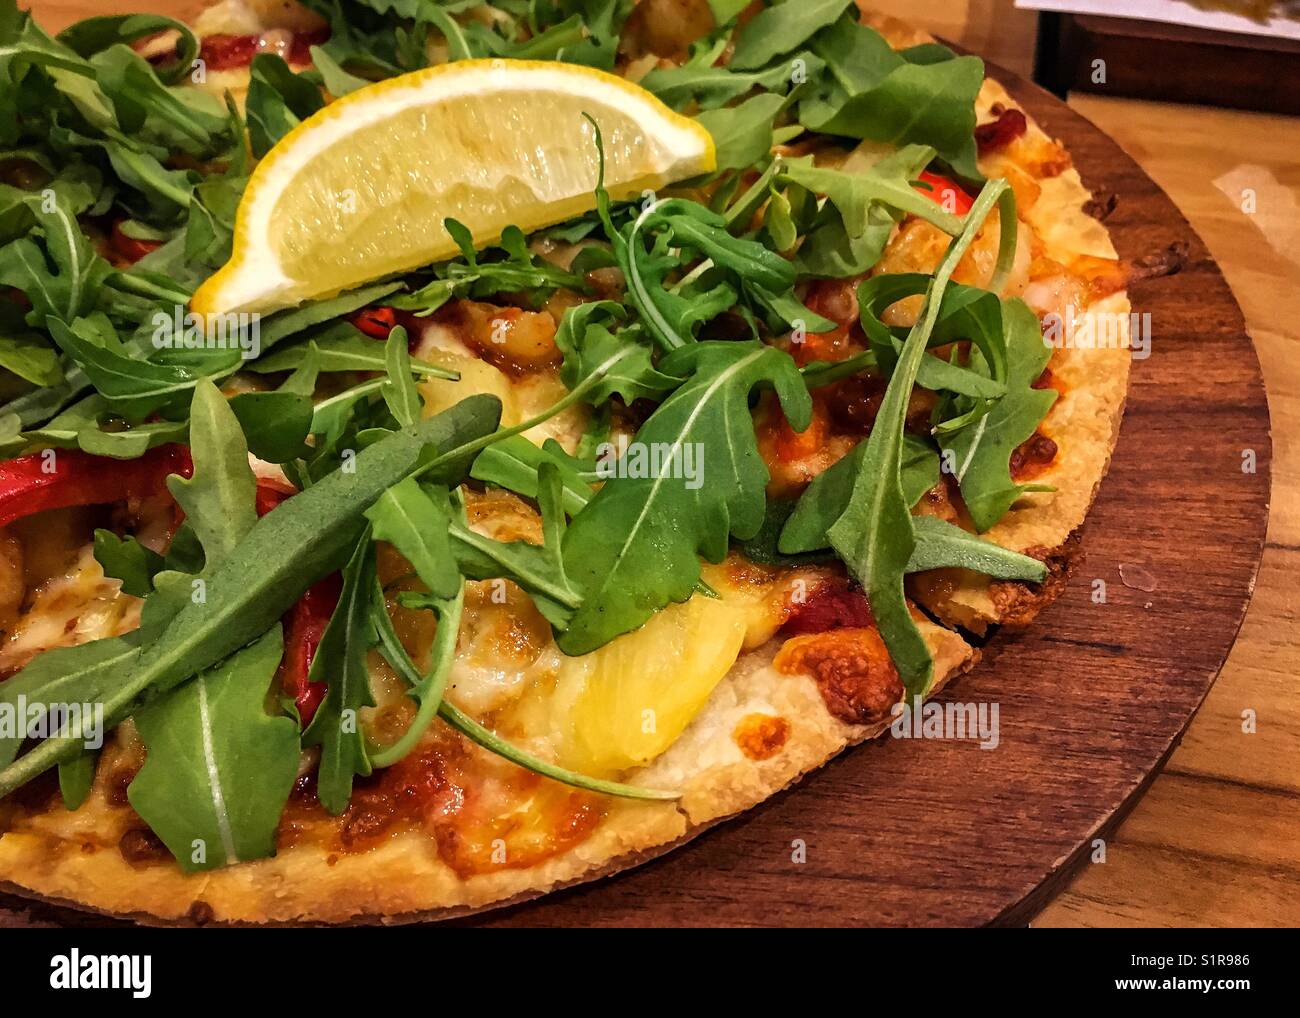 Pizza con salsa di pomodoro, verdure fresche e fette di limone nella vaschetta di legno Foto Stock